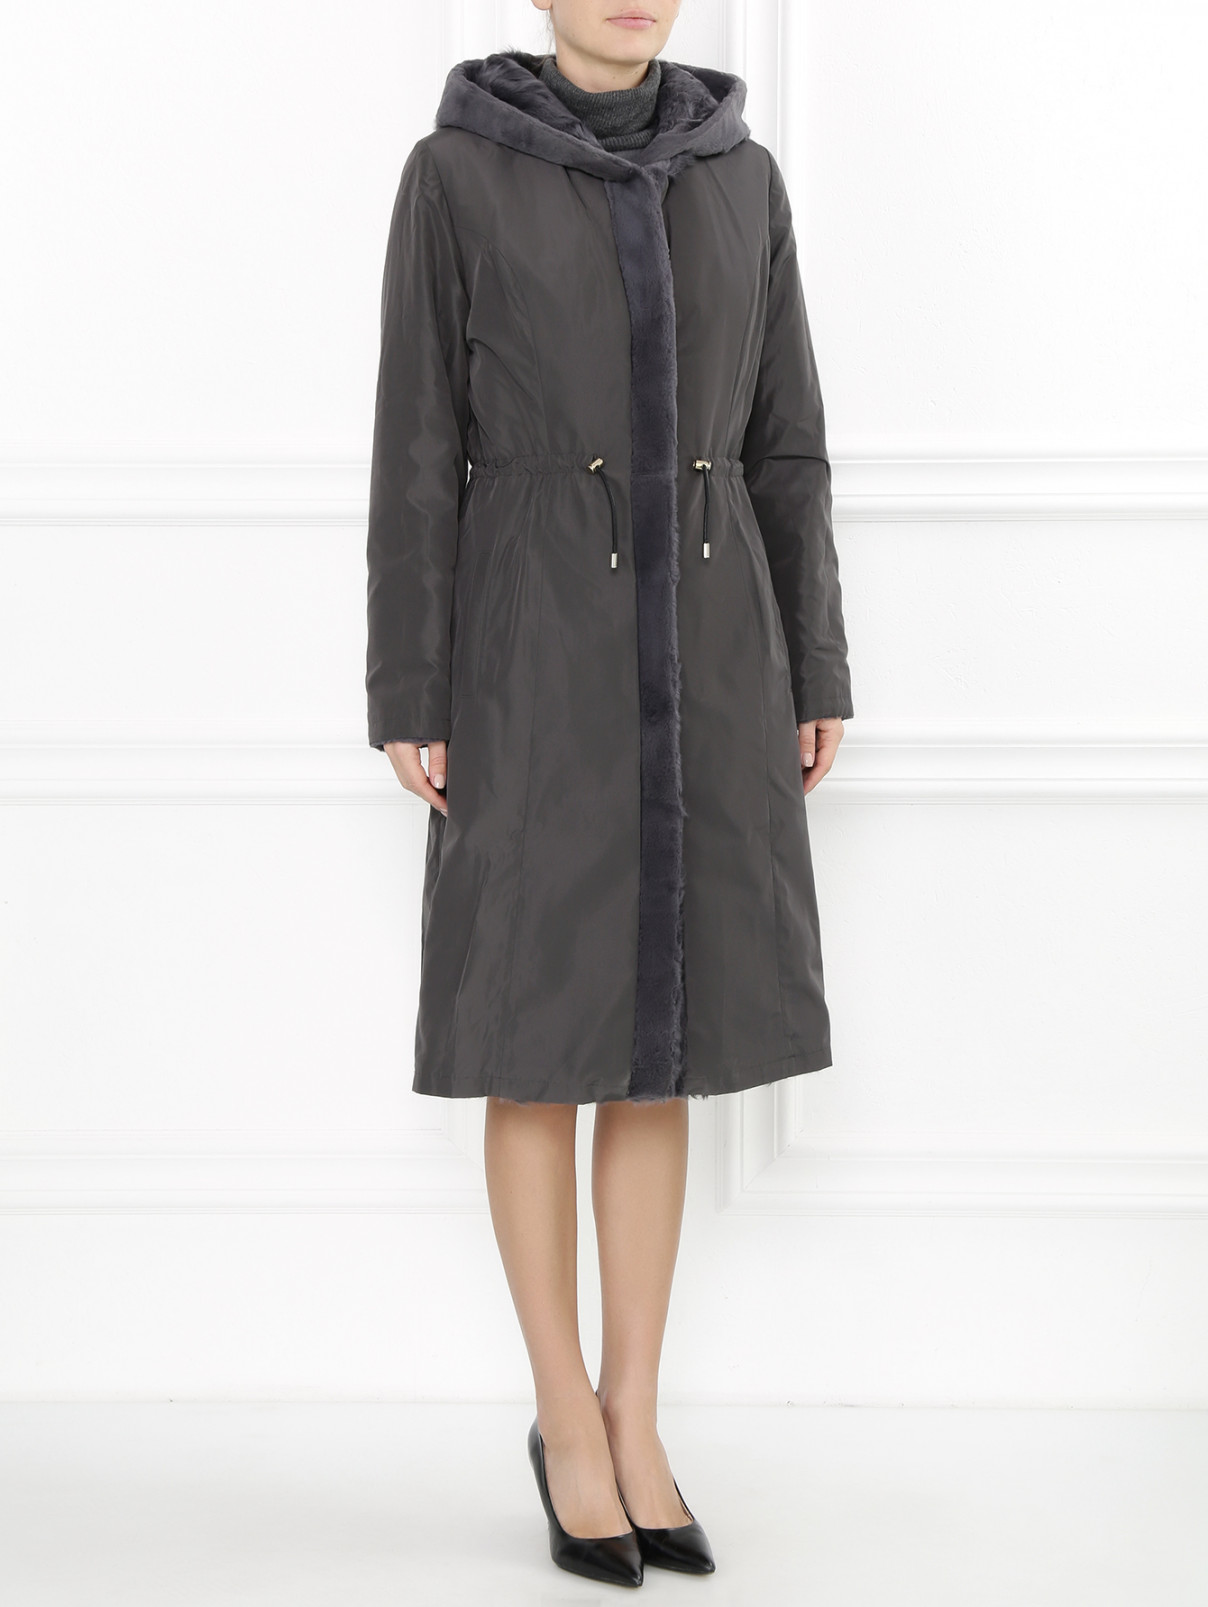 Двустороннее пальто из меха и нейлона Yves Salomon  –  Модель Общий вид  – Цвет:  Серый